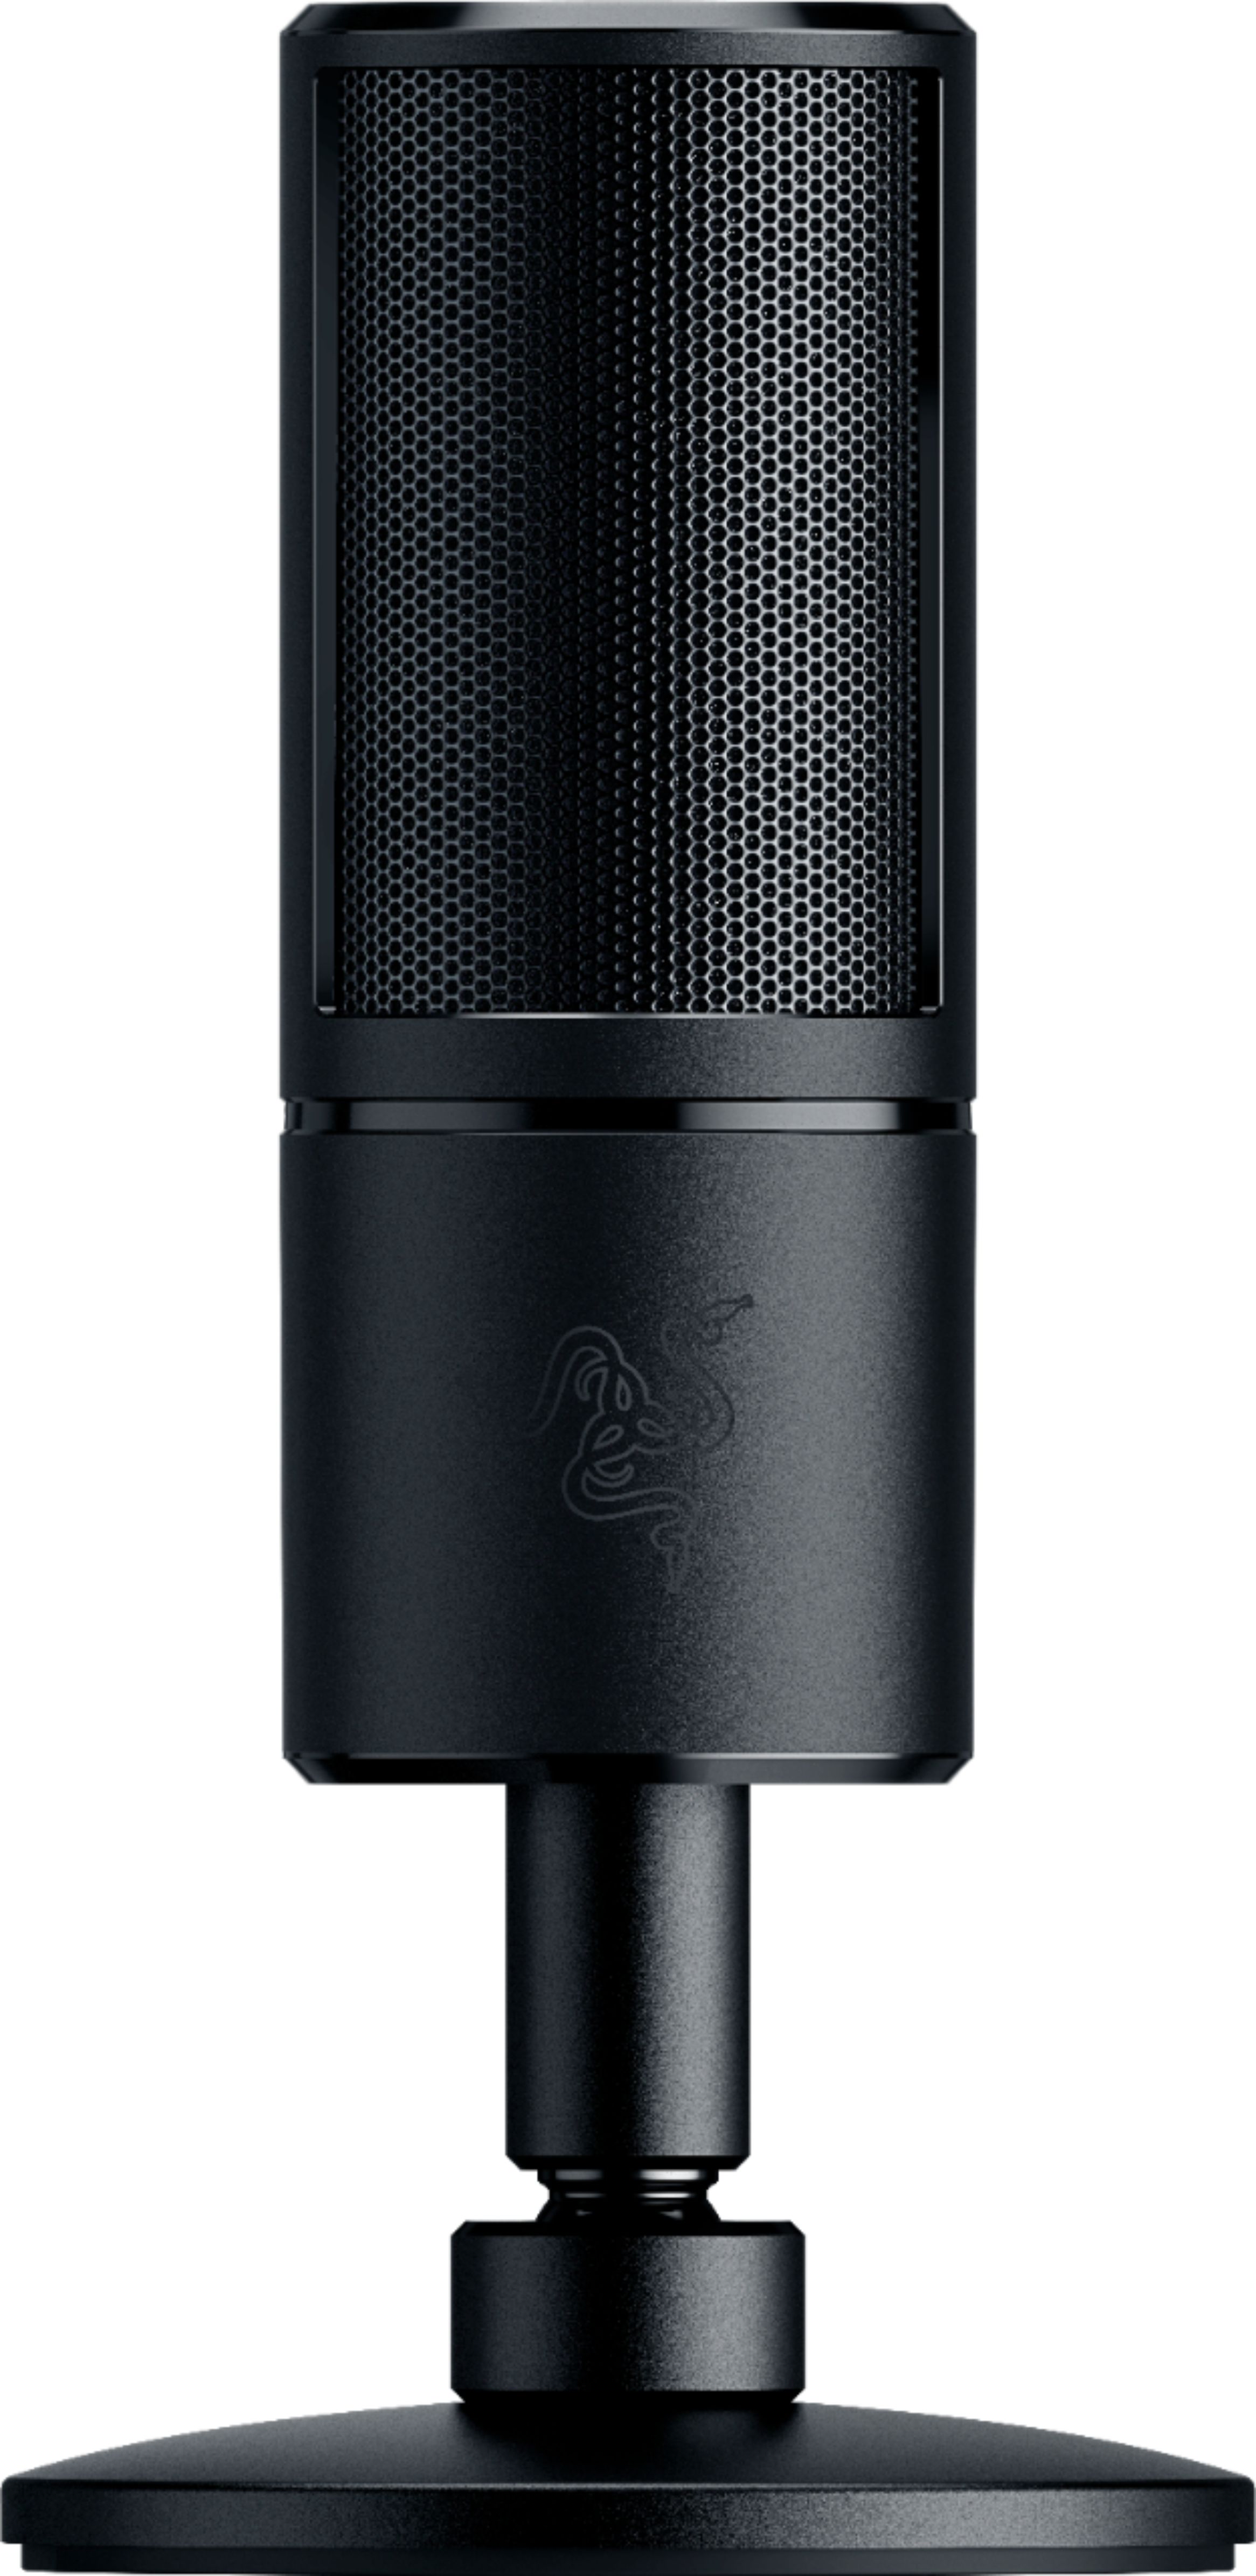 Best Buy: Razer Seirēn X USB Super Cardioid Condenser Microphone  RZ19-02290300-R3M1